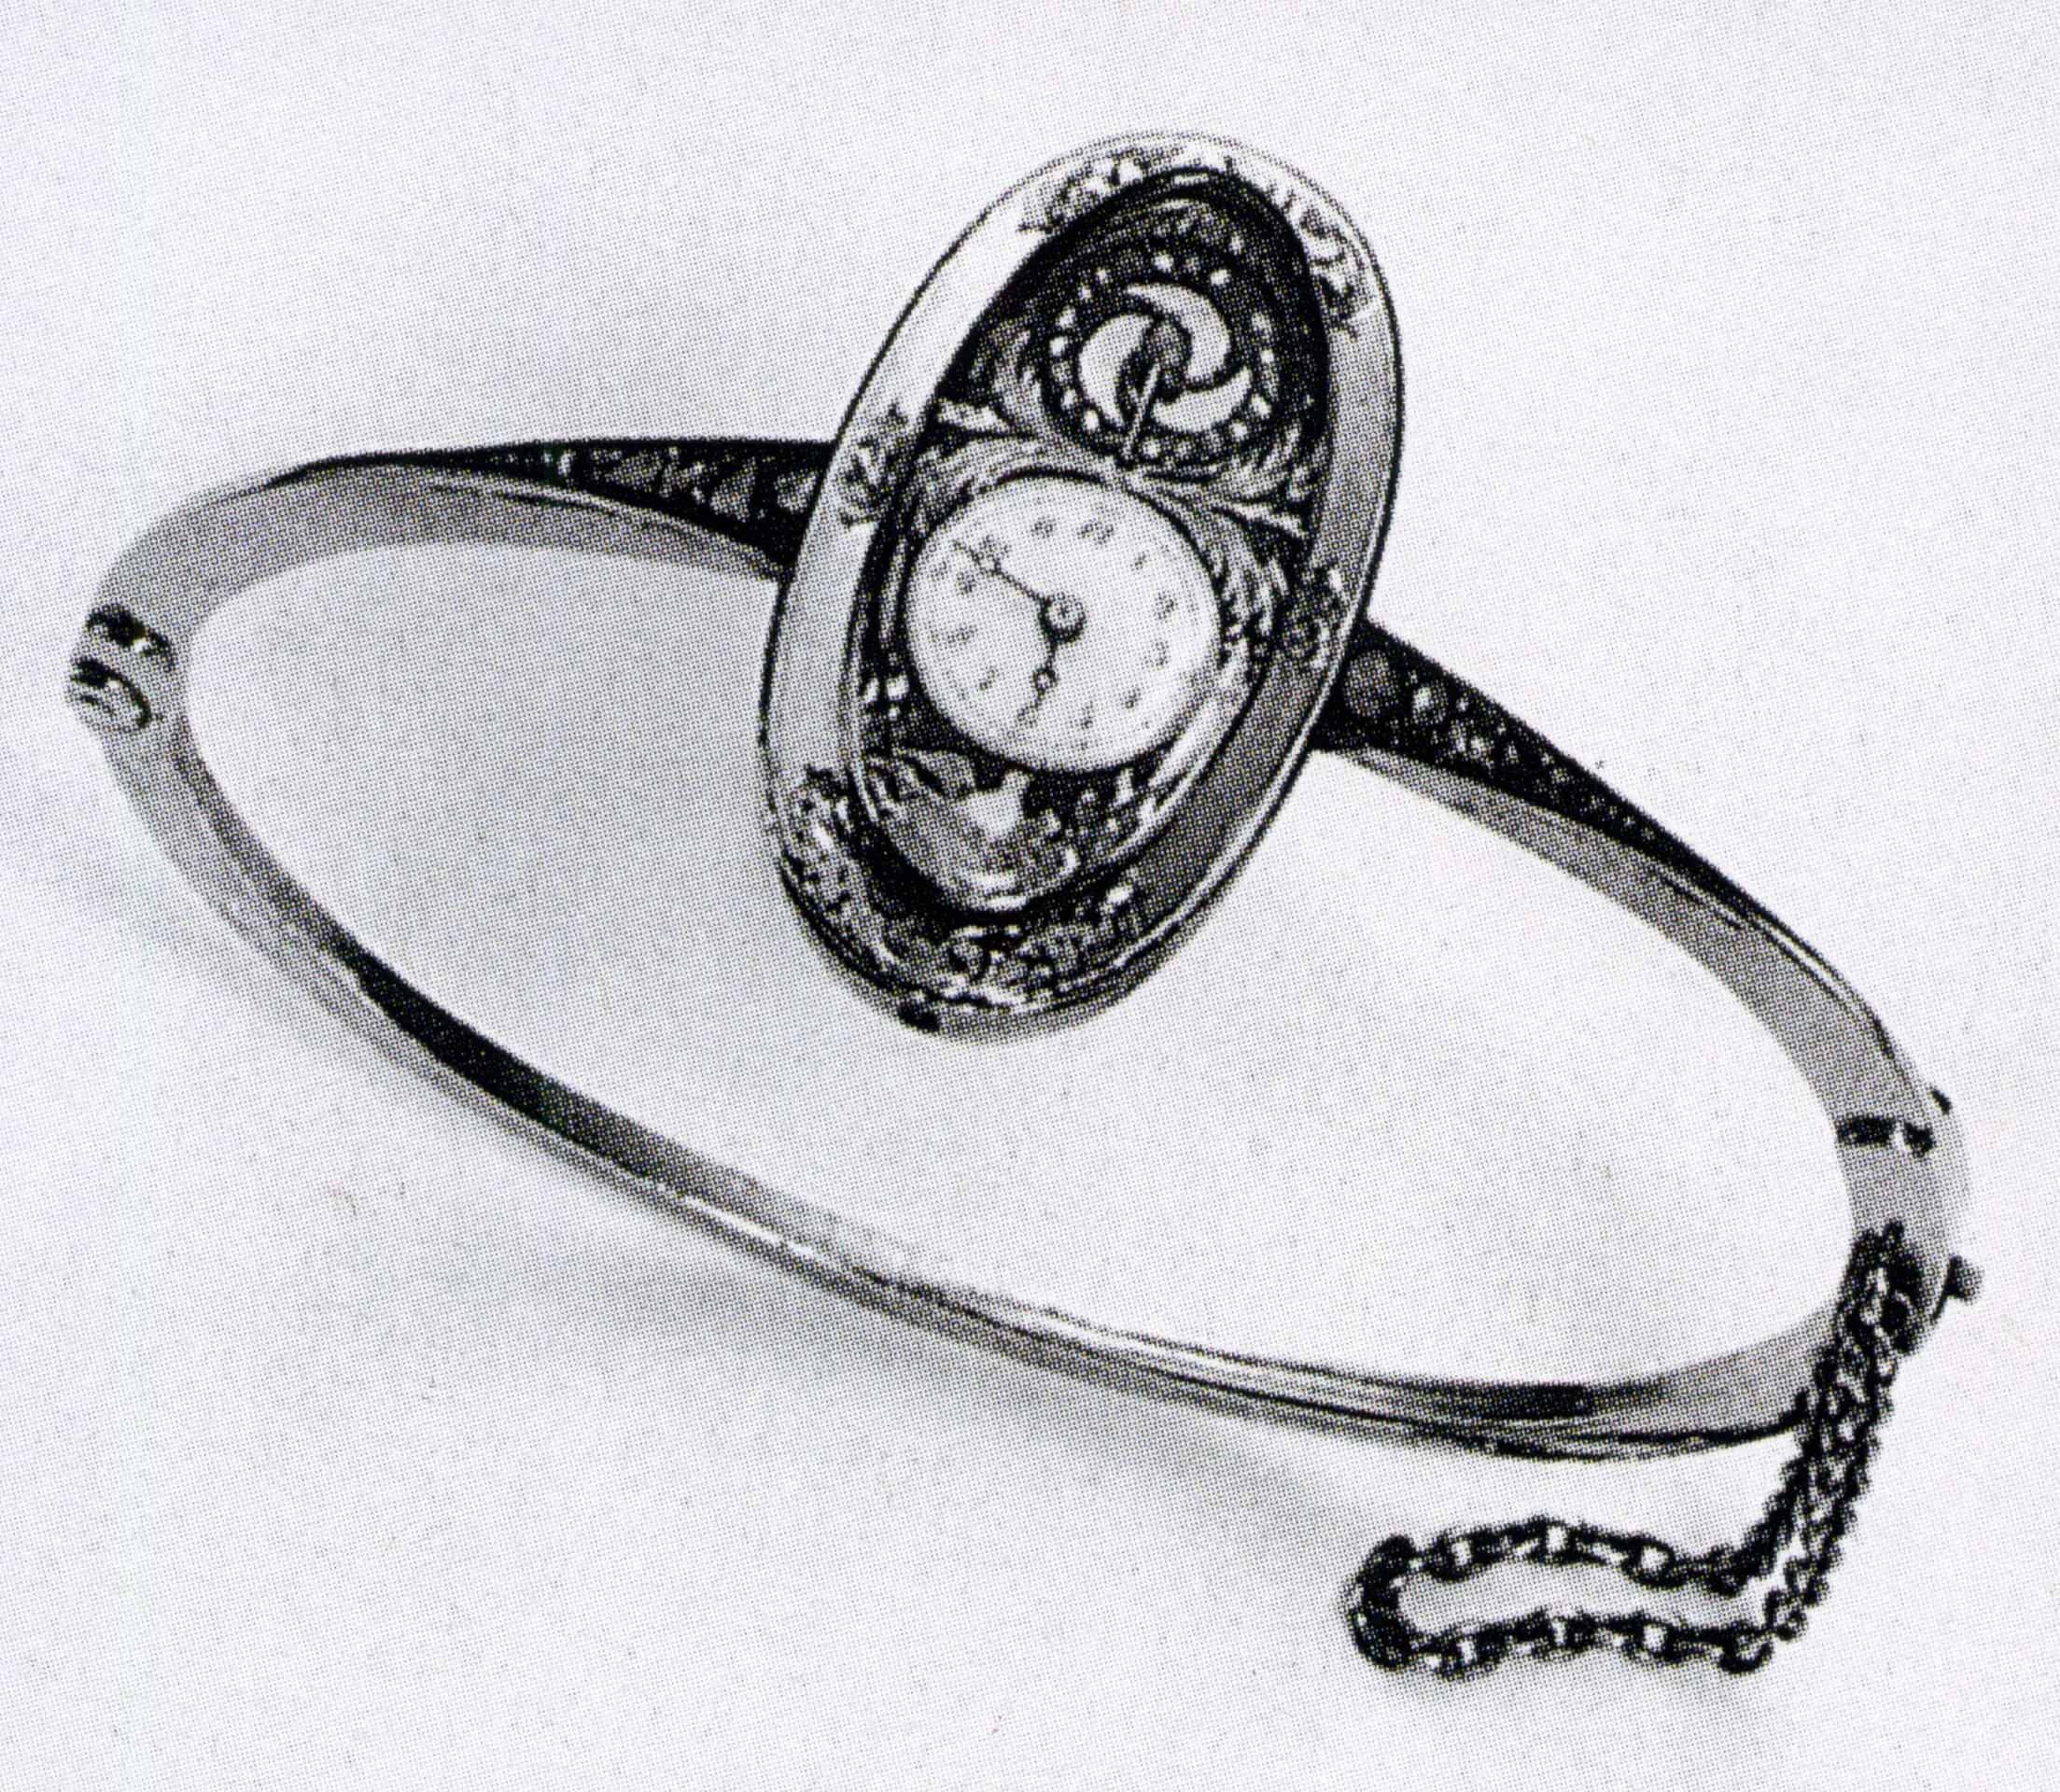 Genfer Spangen-Uhr mit sichtbarer Unruh von circa 1900